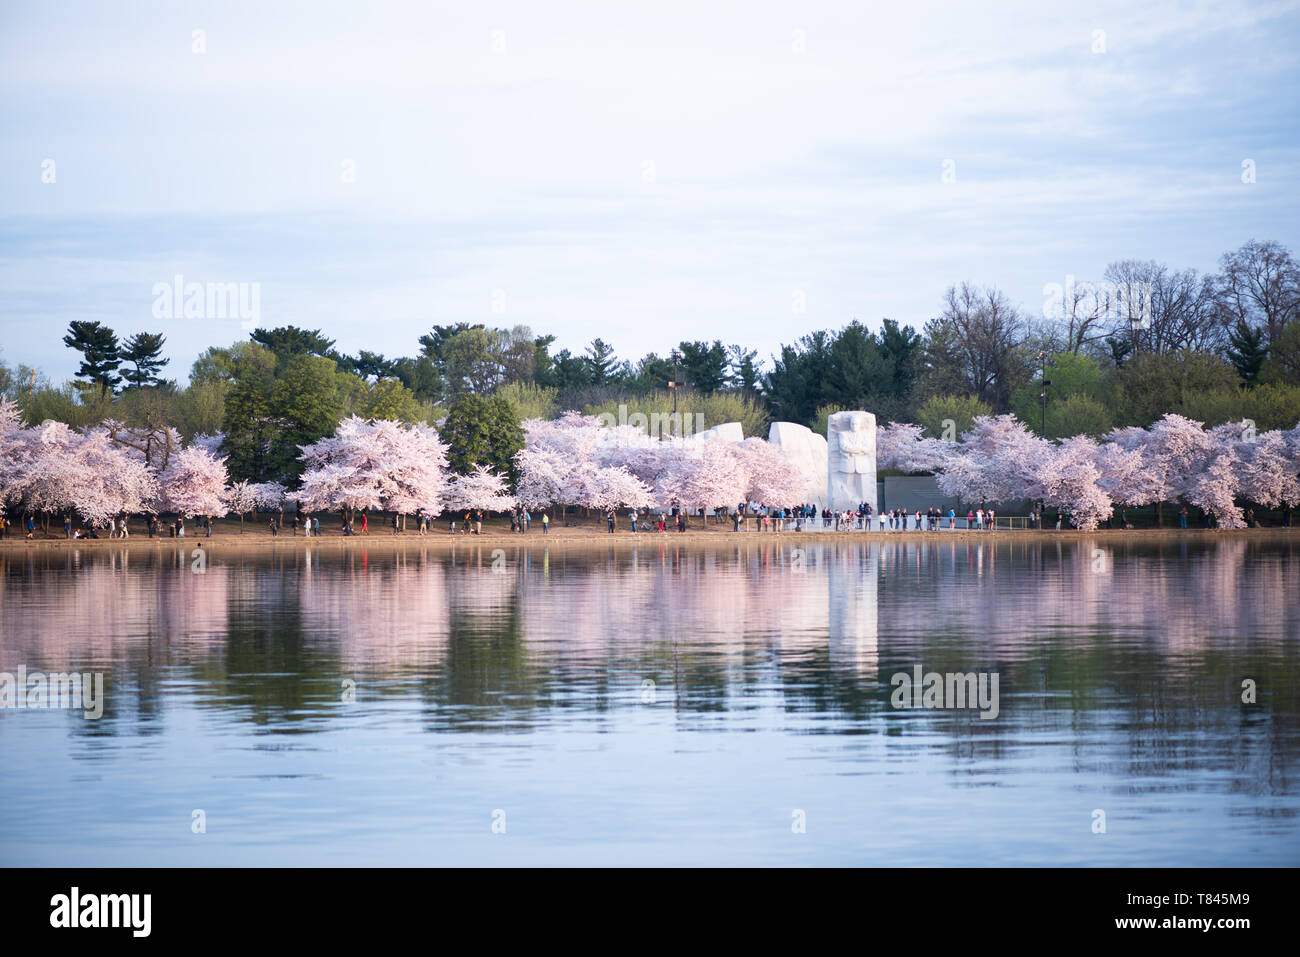 WASHINGTON, DC - magnifiques fleurs roses de Washington DC's célèbre cerisiers bordant le bassin de marée à côté du Dr Martin Luther King Memorial. Des milliers de cerisiers ring du bassin et de la région environnante dans et autour de le National Mall. Chaque printemps, leur floraison attire les touristes de partout dans le monde. Banque D'Images